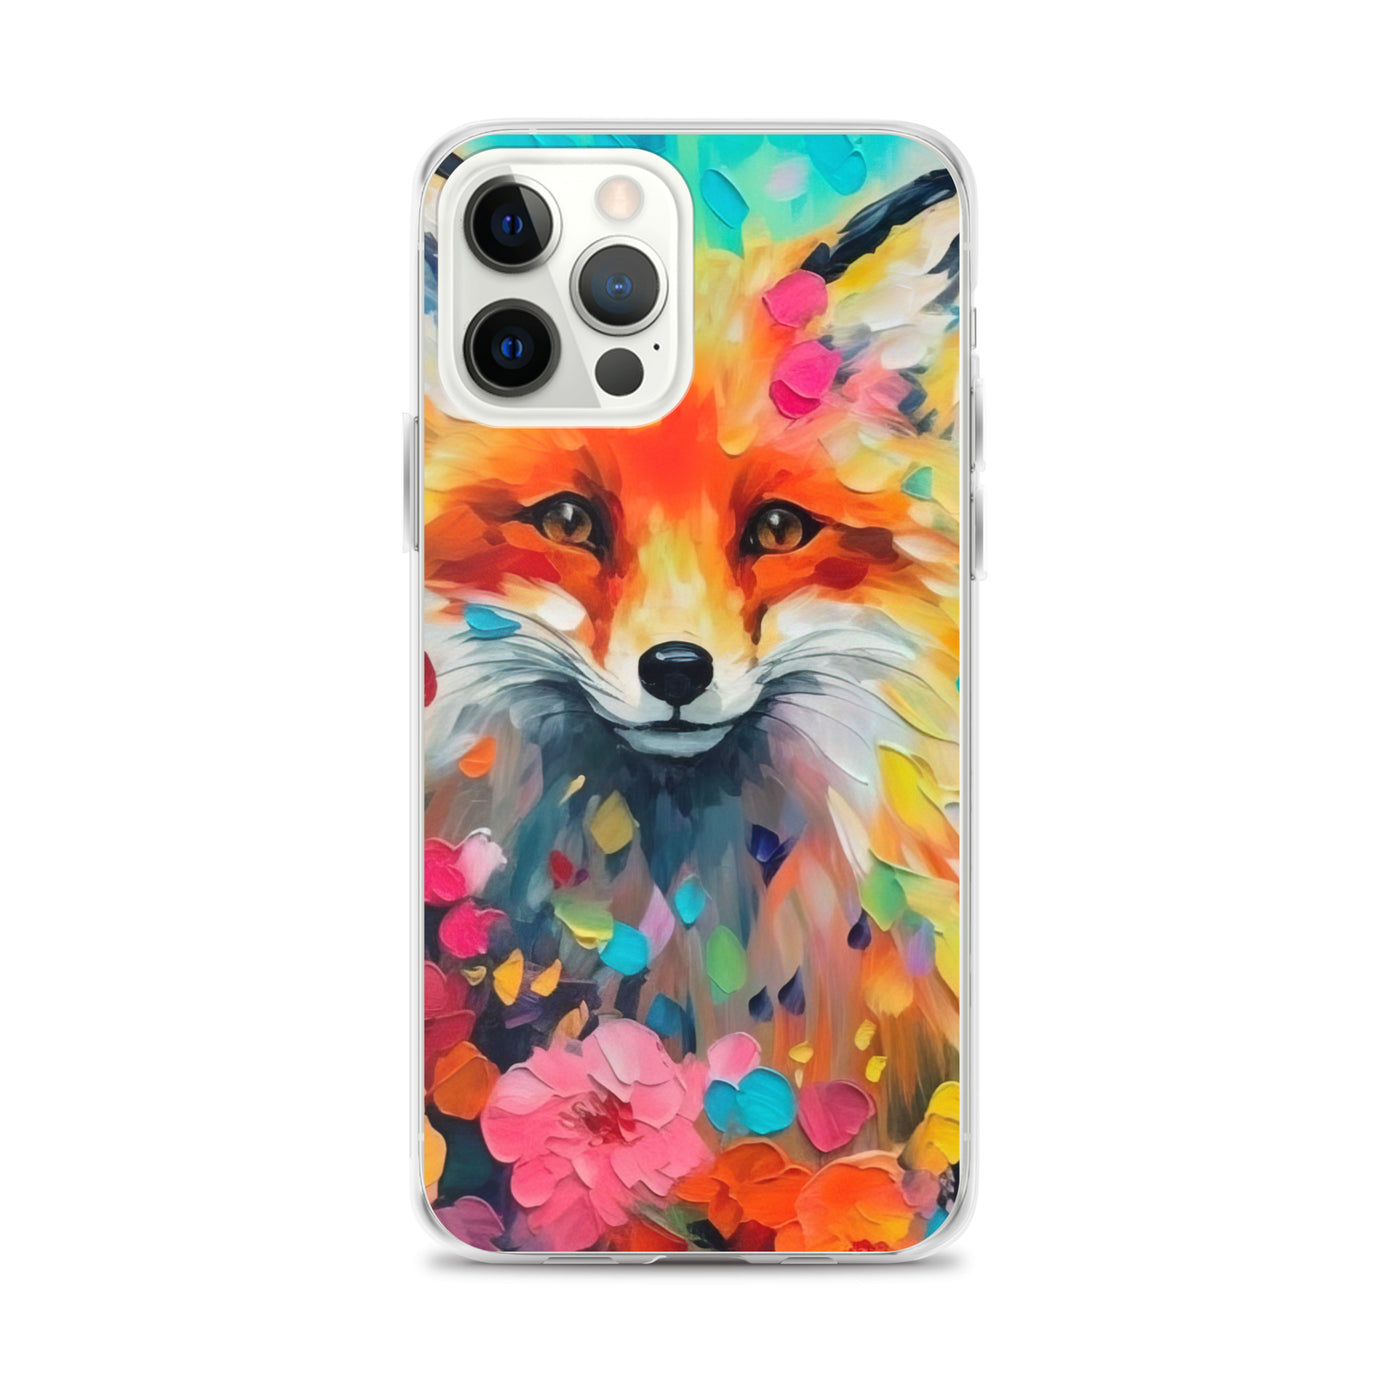 Schöner Fuchs im Blumenfeld - Farbige Malerei - iPhone Schutzhülle (durchsichtig) camping xxx iPhone 12 Pro Max